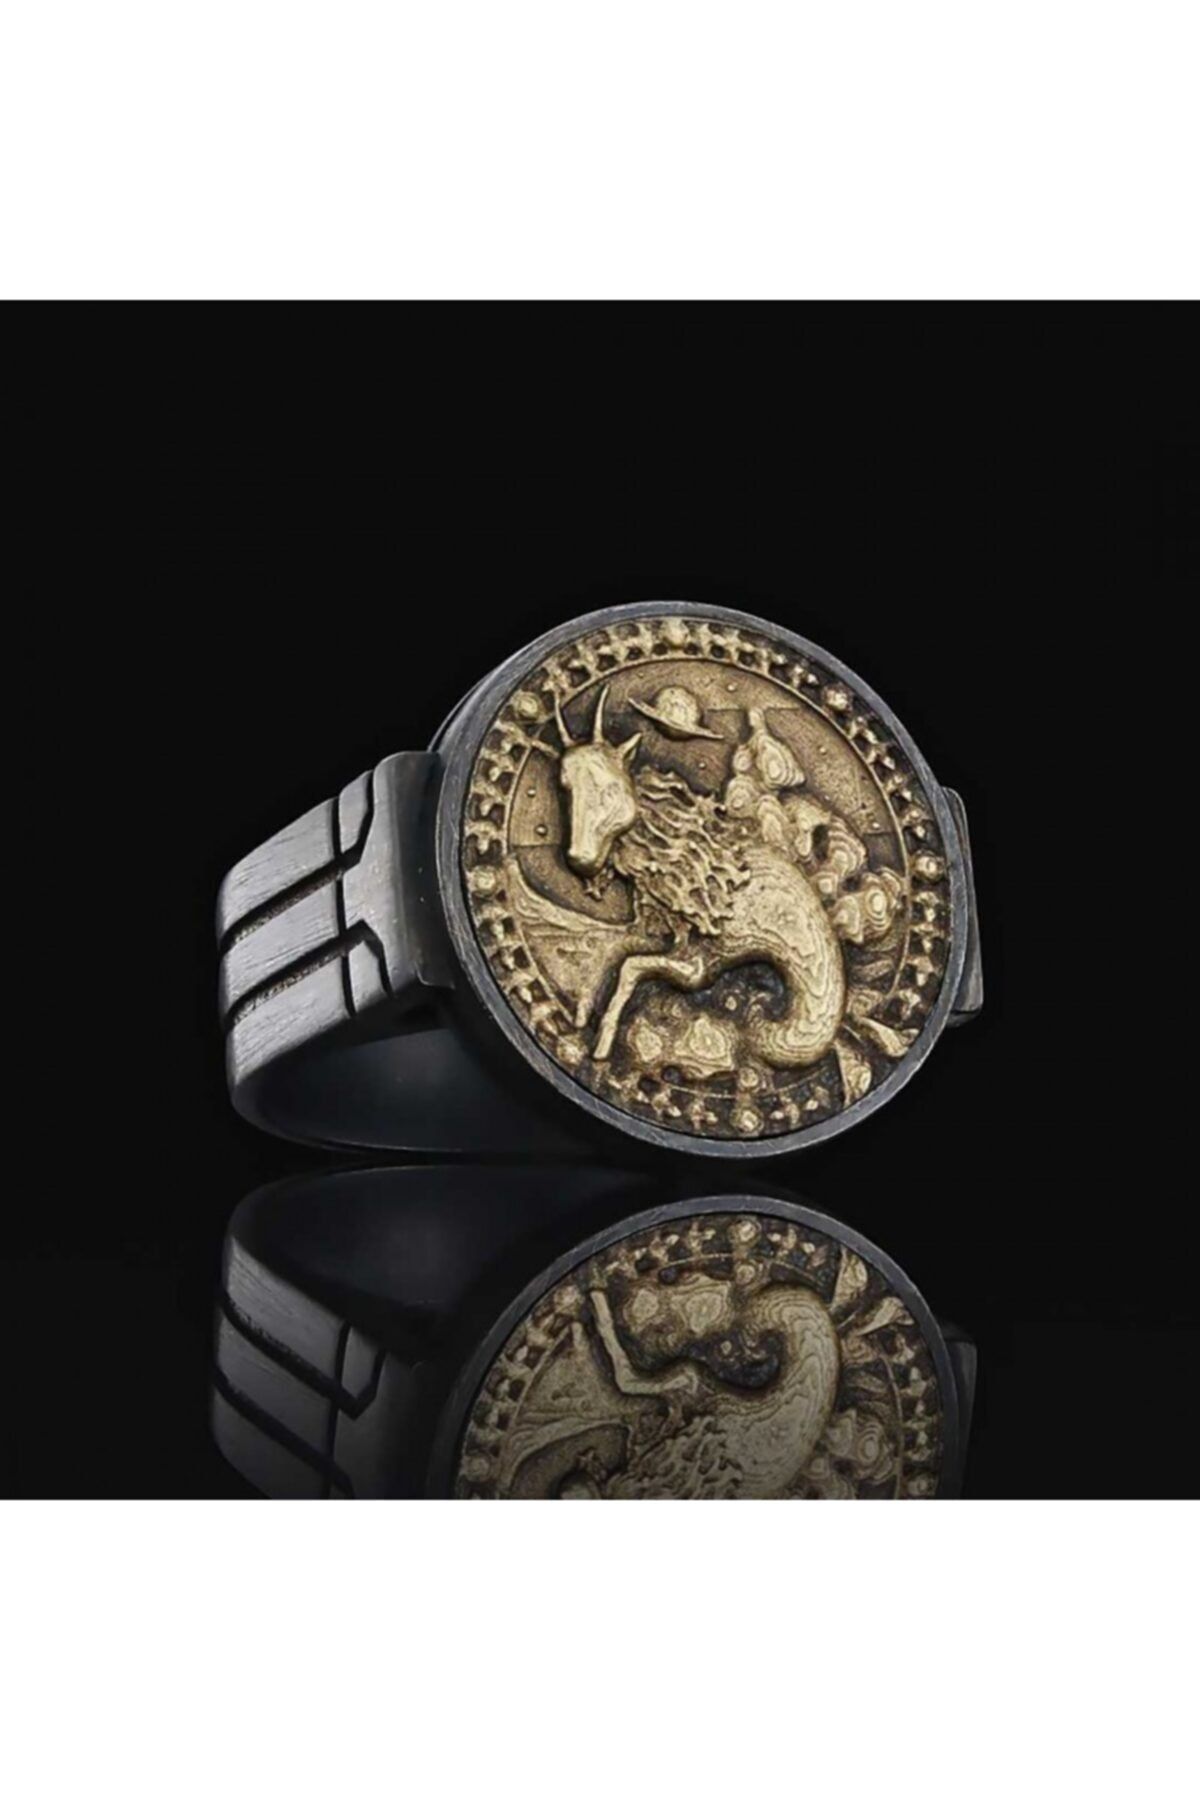 ELMAS İŞ Oğlak Burcu Özel Tasarım 925 Ayar Gümüş Üzeri Siyah Rodyum Kaplama Koleksiyon Yüzük